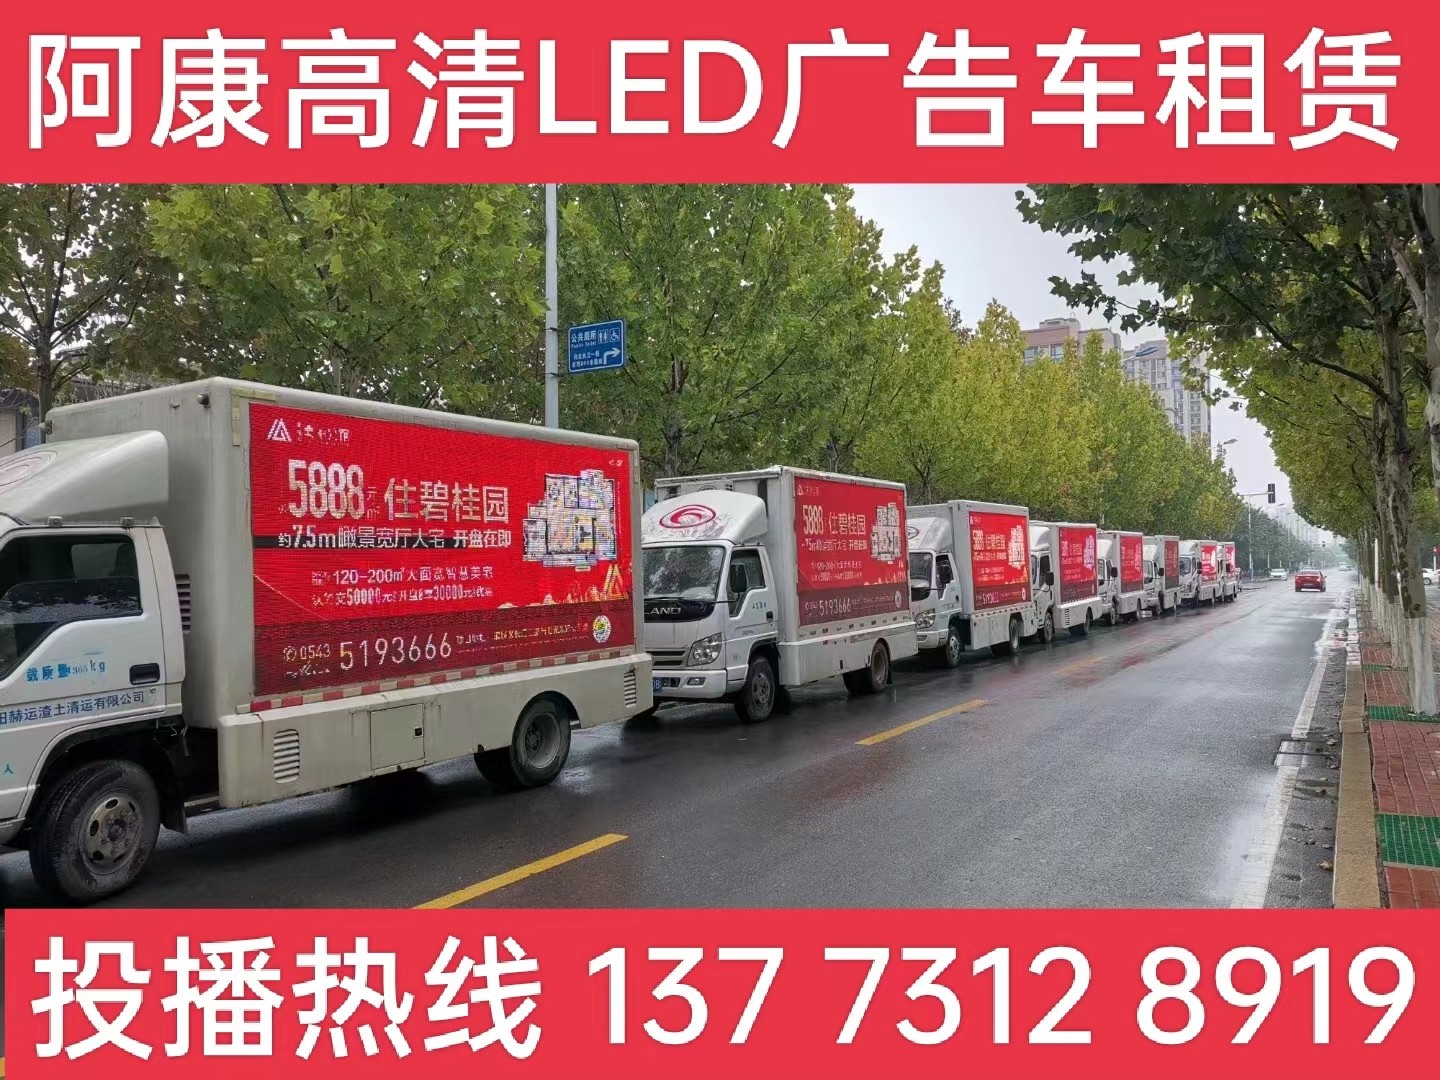 天长宣传车租赁公司-楼盘LED广告车投放